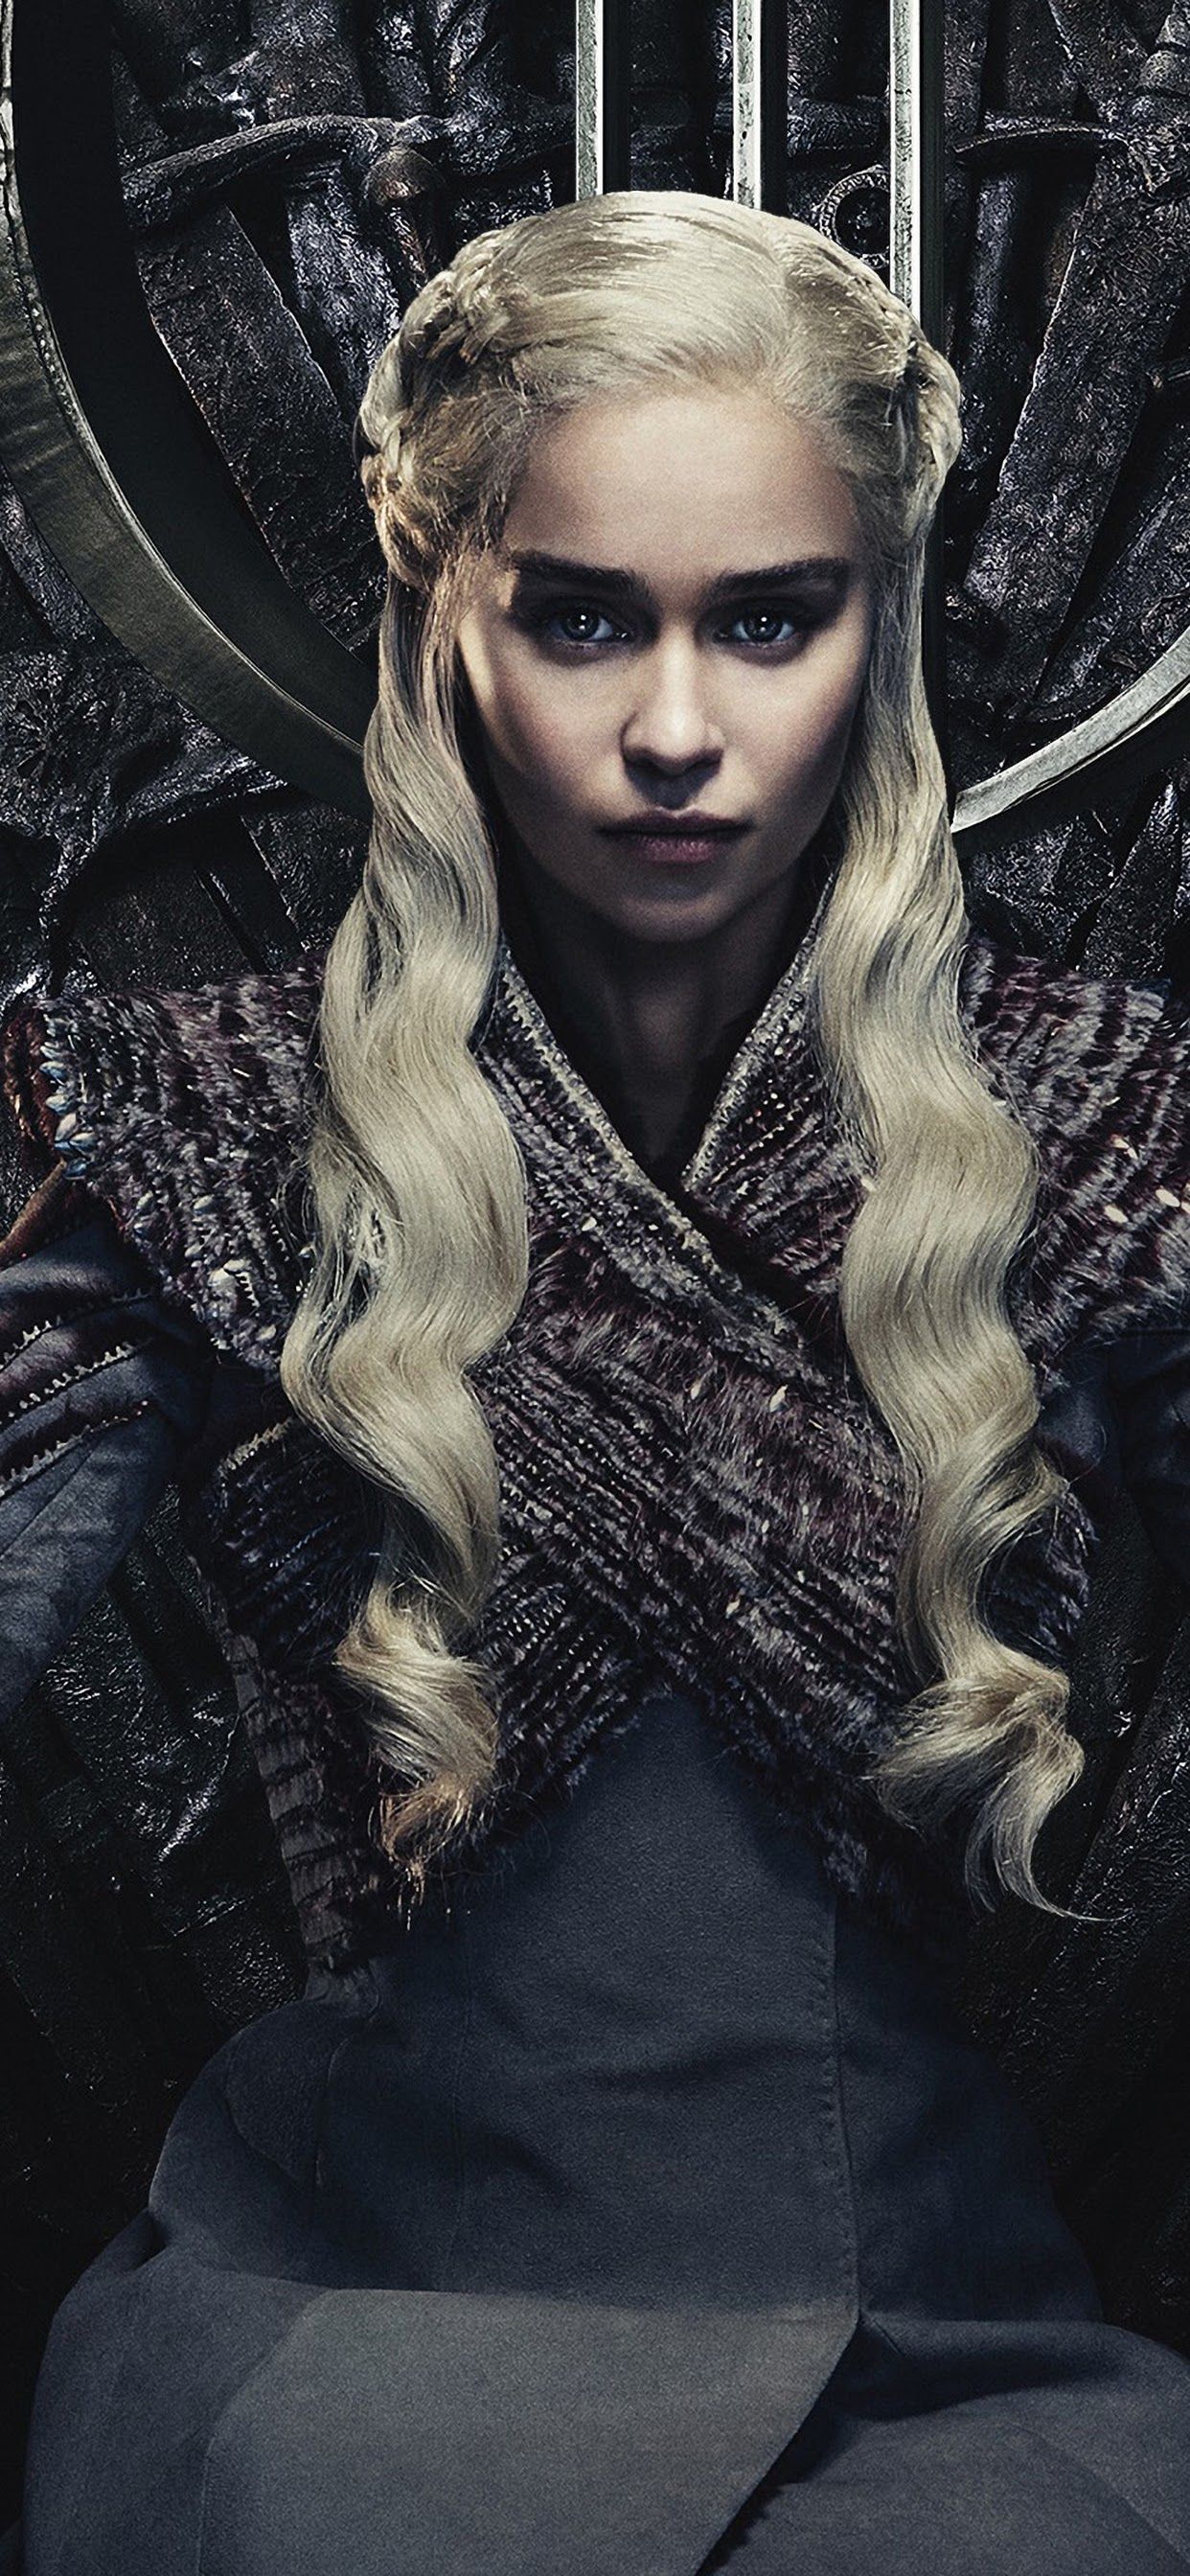 Daenerys Targaryen Game of Thrones Season 8 4K Wallpaper